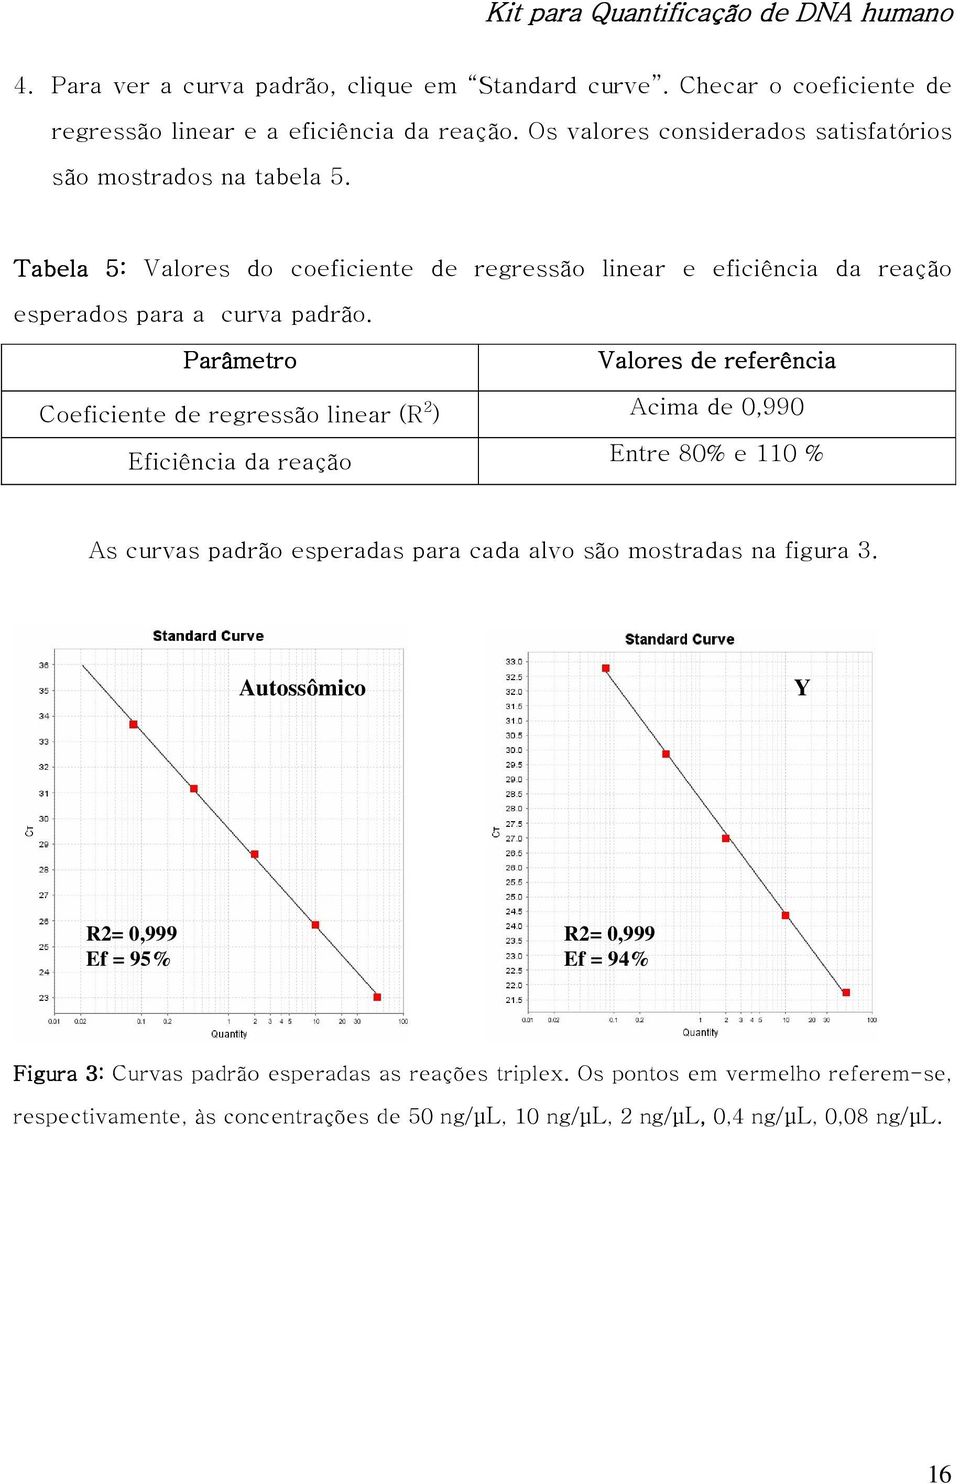 Parâmetro Valores de referência Coeficiente de regressão linear (R 2 ) Acima de 0,990 Eficiência da reação Entre 80% e 110 % As curvas padrão esperadas para cada alvo são